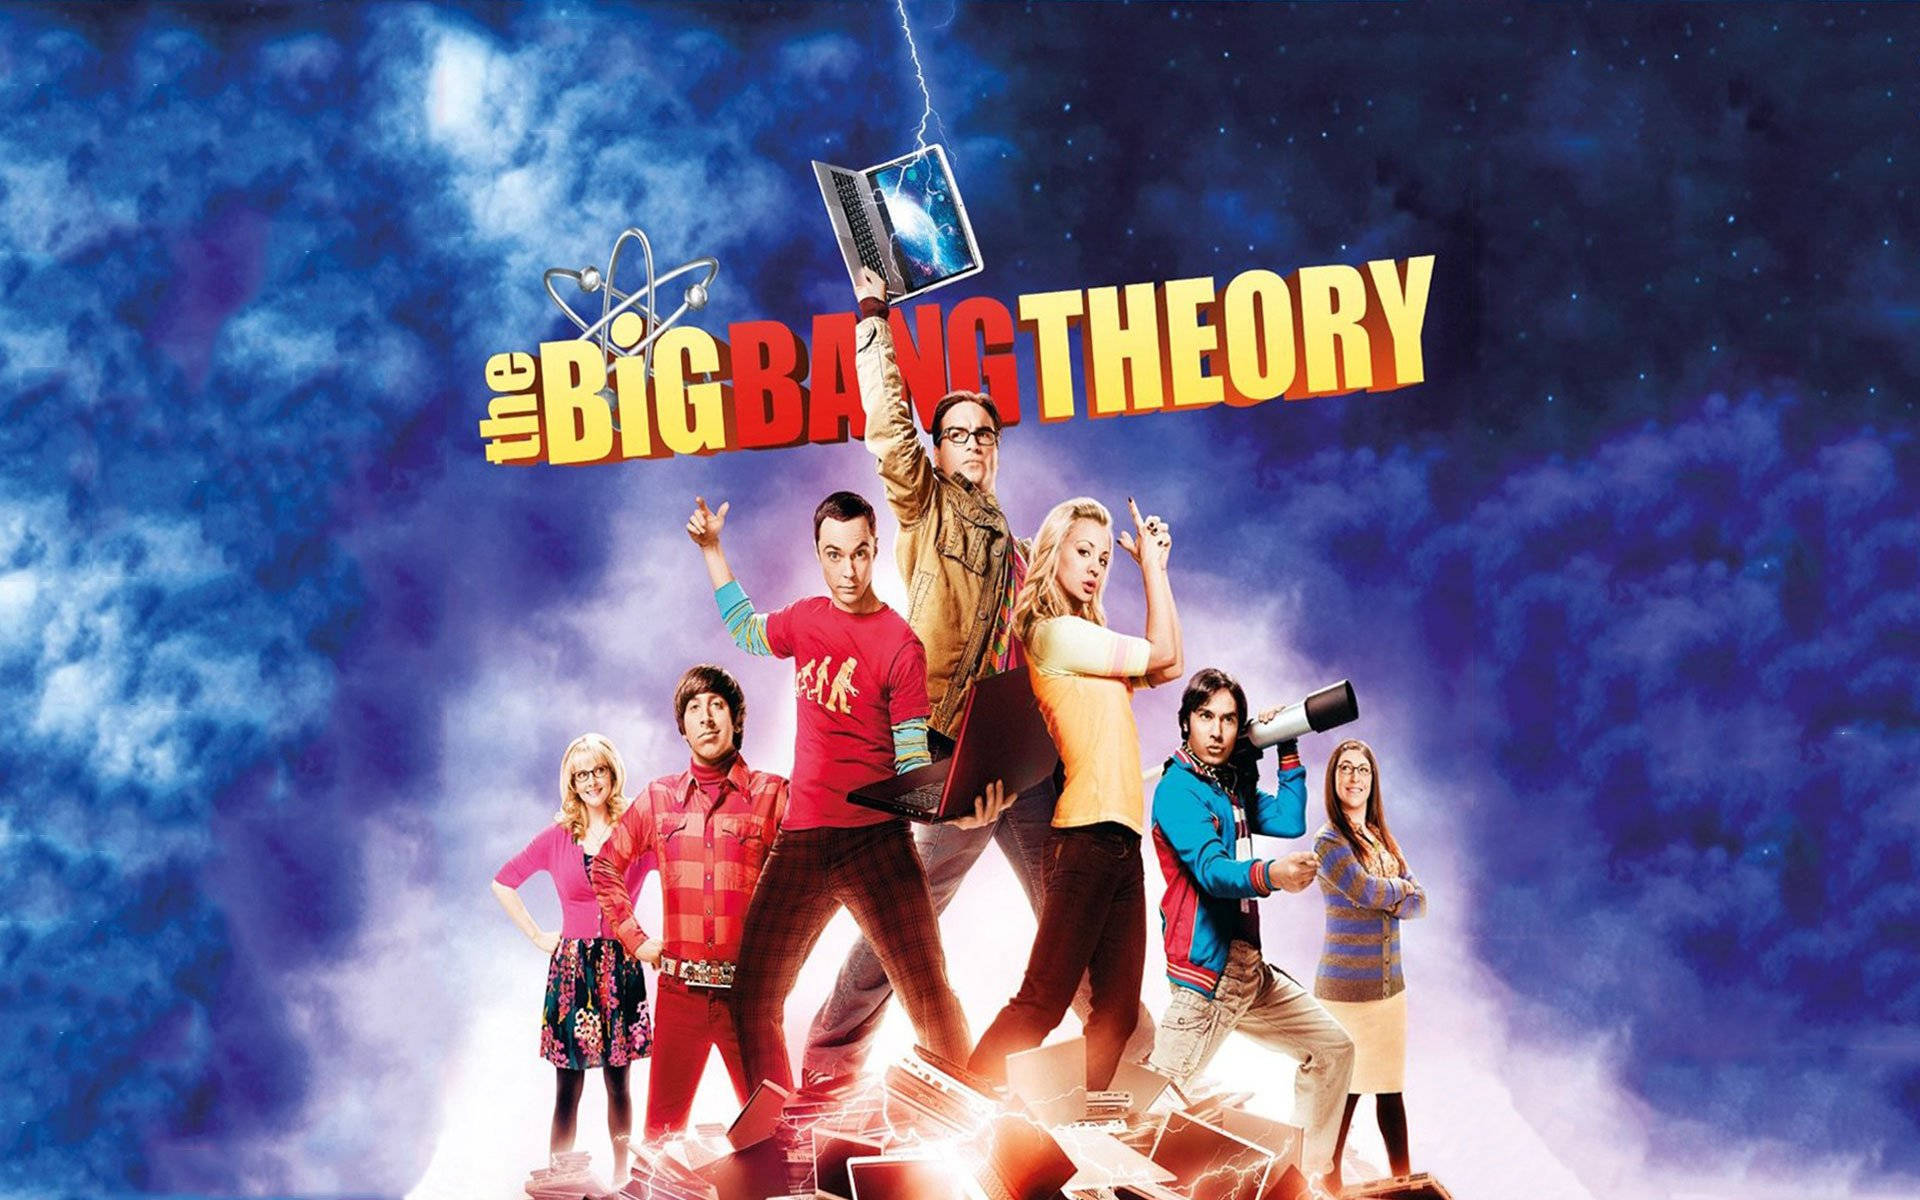 The Big Bang Theory Show Poster Wallpaper